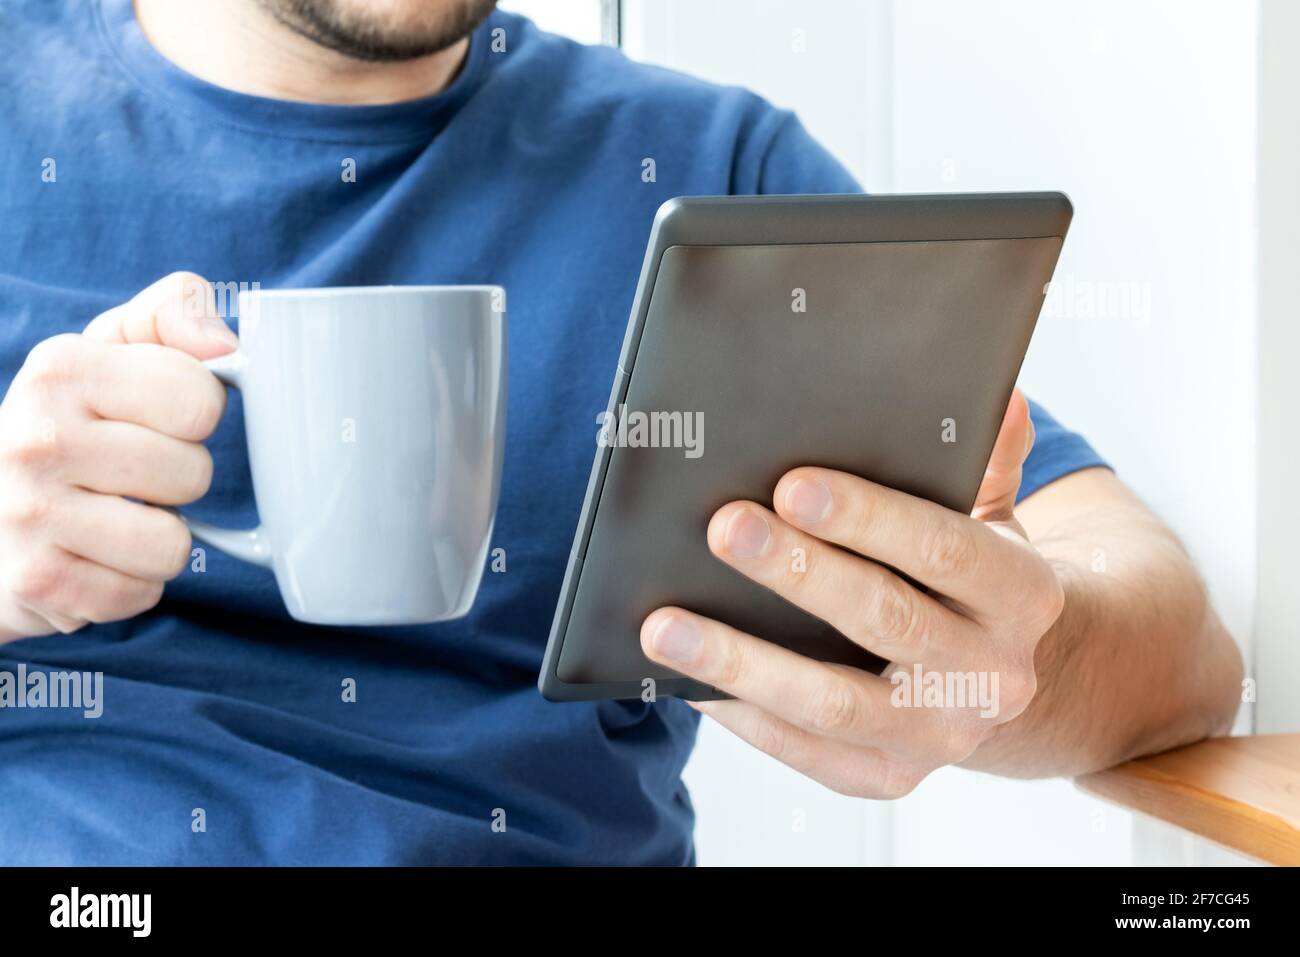 Ein Mann in einem blauen T-Shirt hält in der einen Hand ein graues E-Reader-elektronisches Buch und in der anderen eine Tasse. Beim Frühstück ein Buch oder Nachrichten auf einem Tablet lesen. Sel Stockfoto